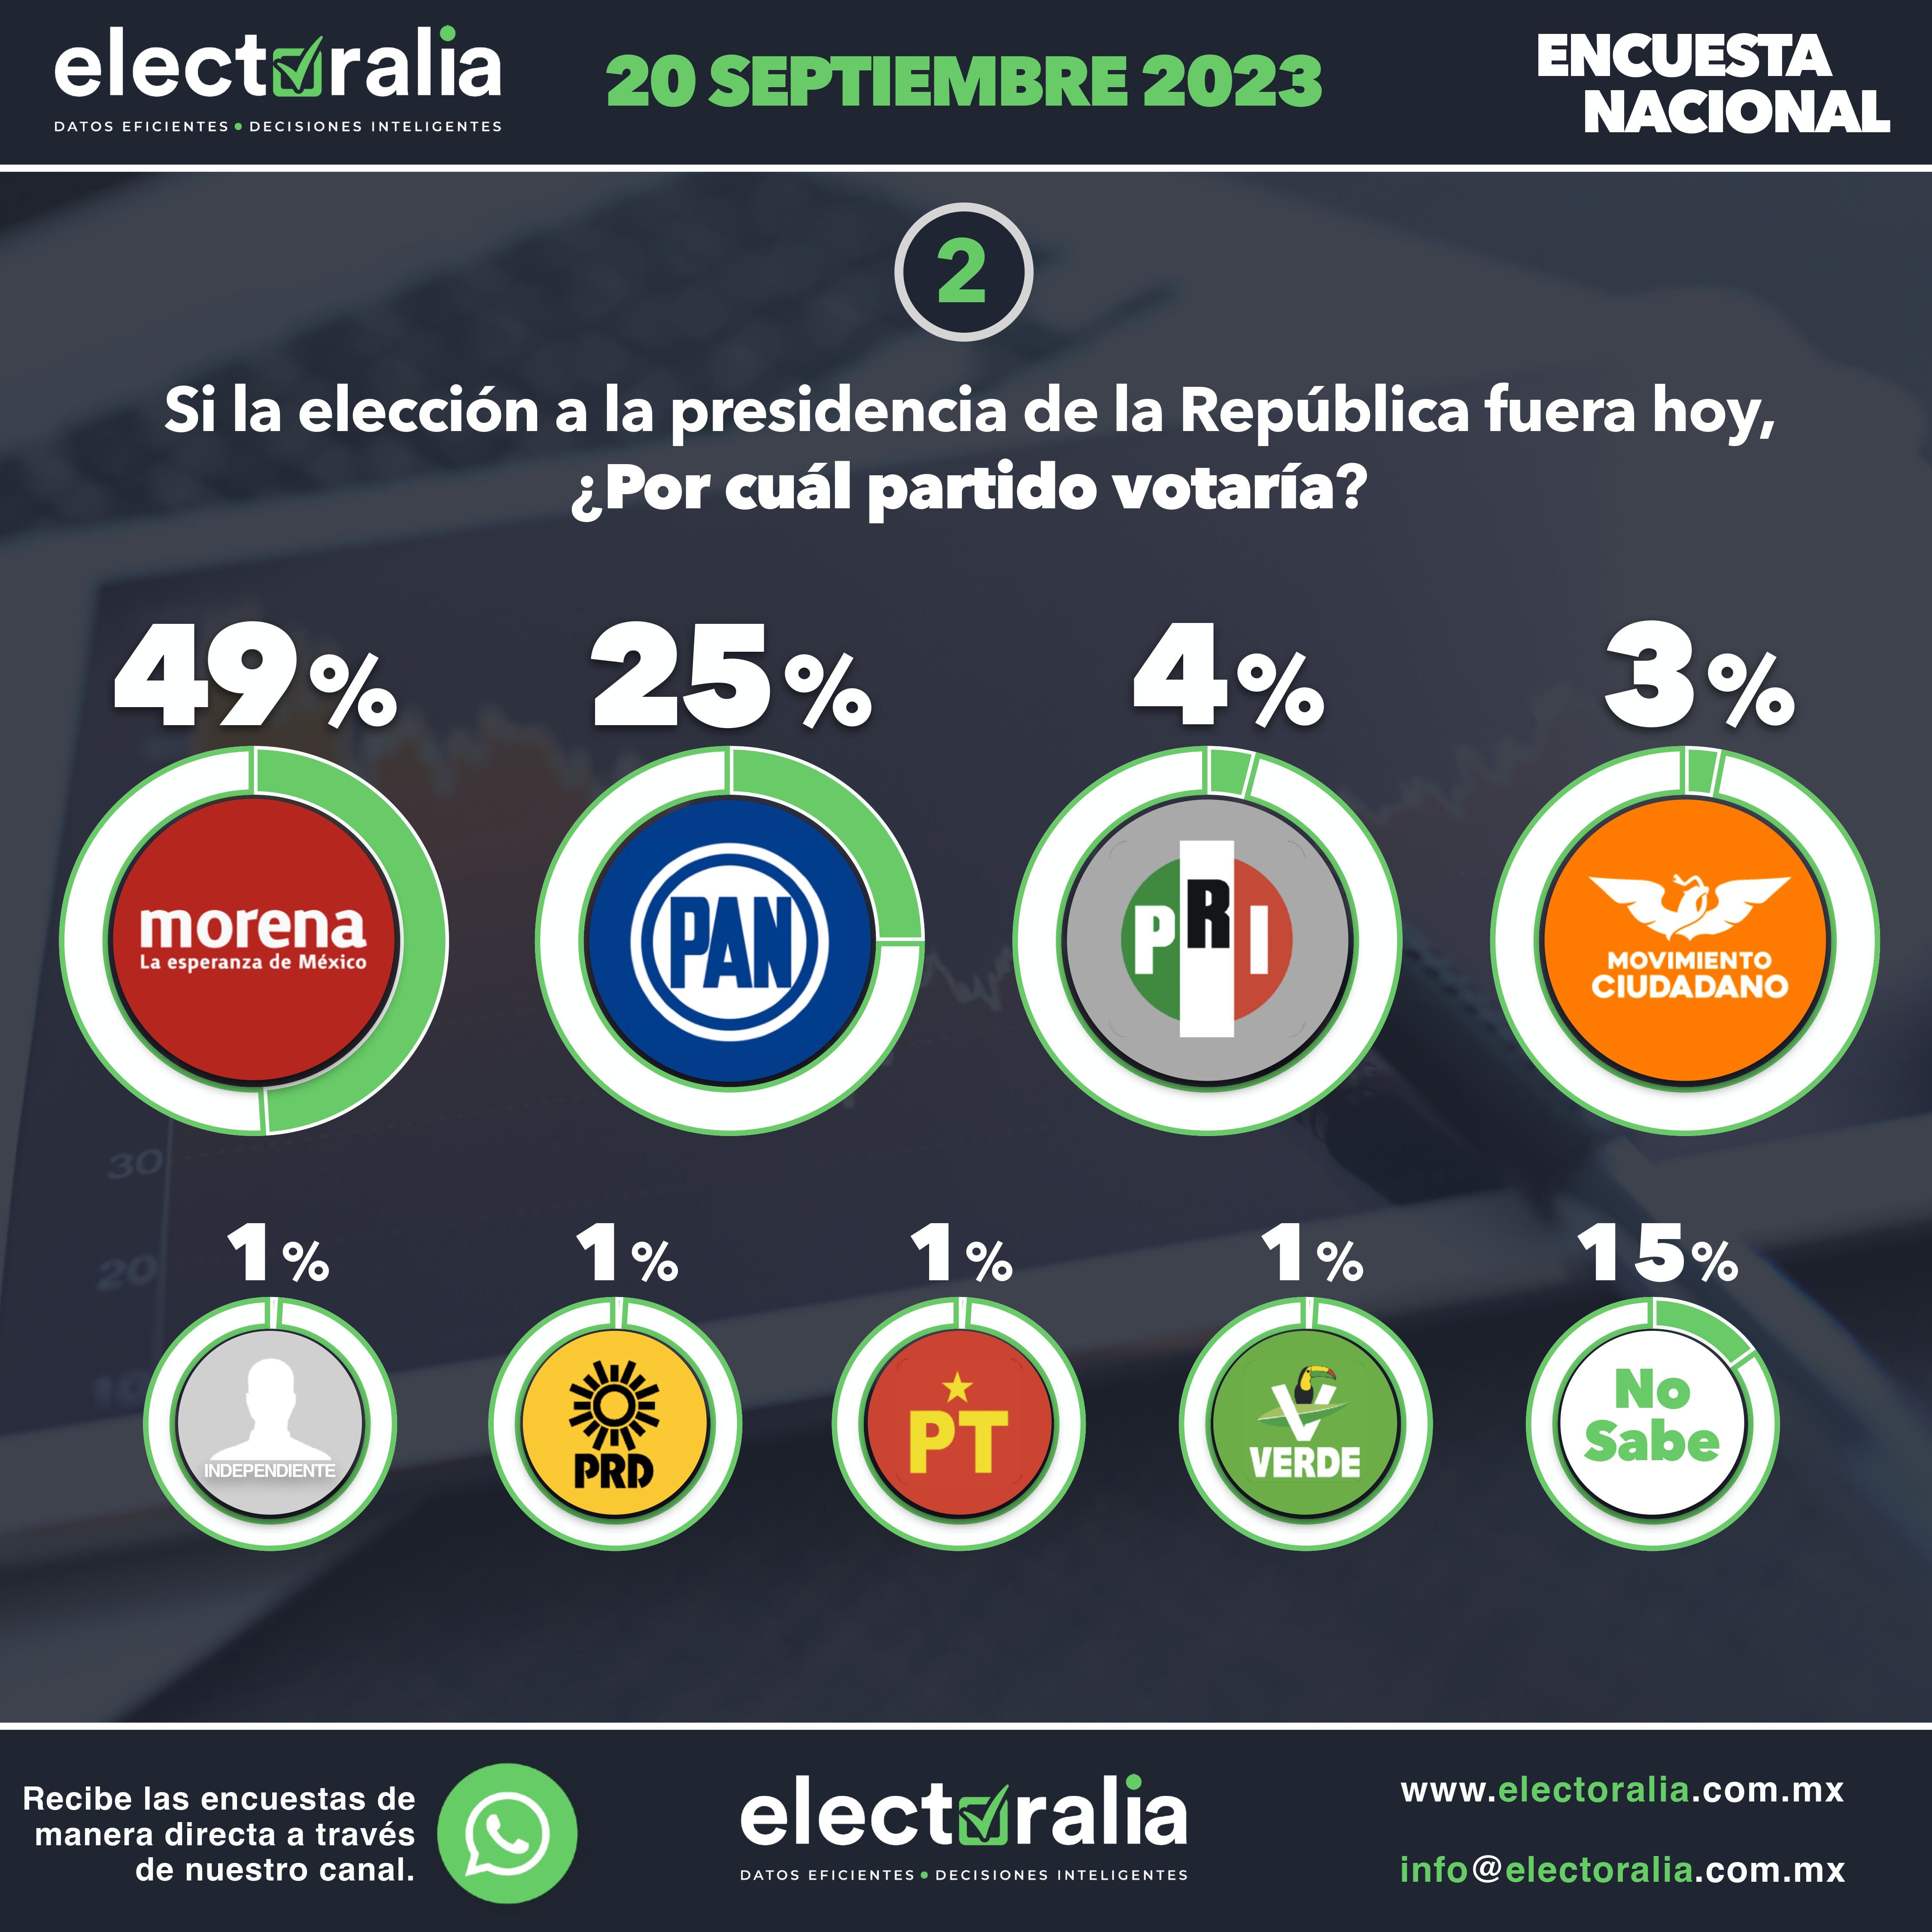 Preferencias electorales nacionales
Imagen:
electoralia